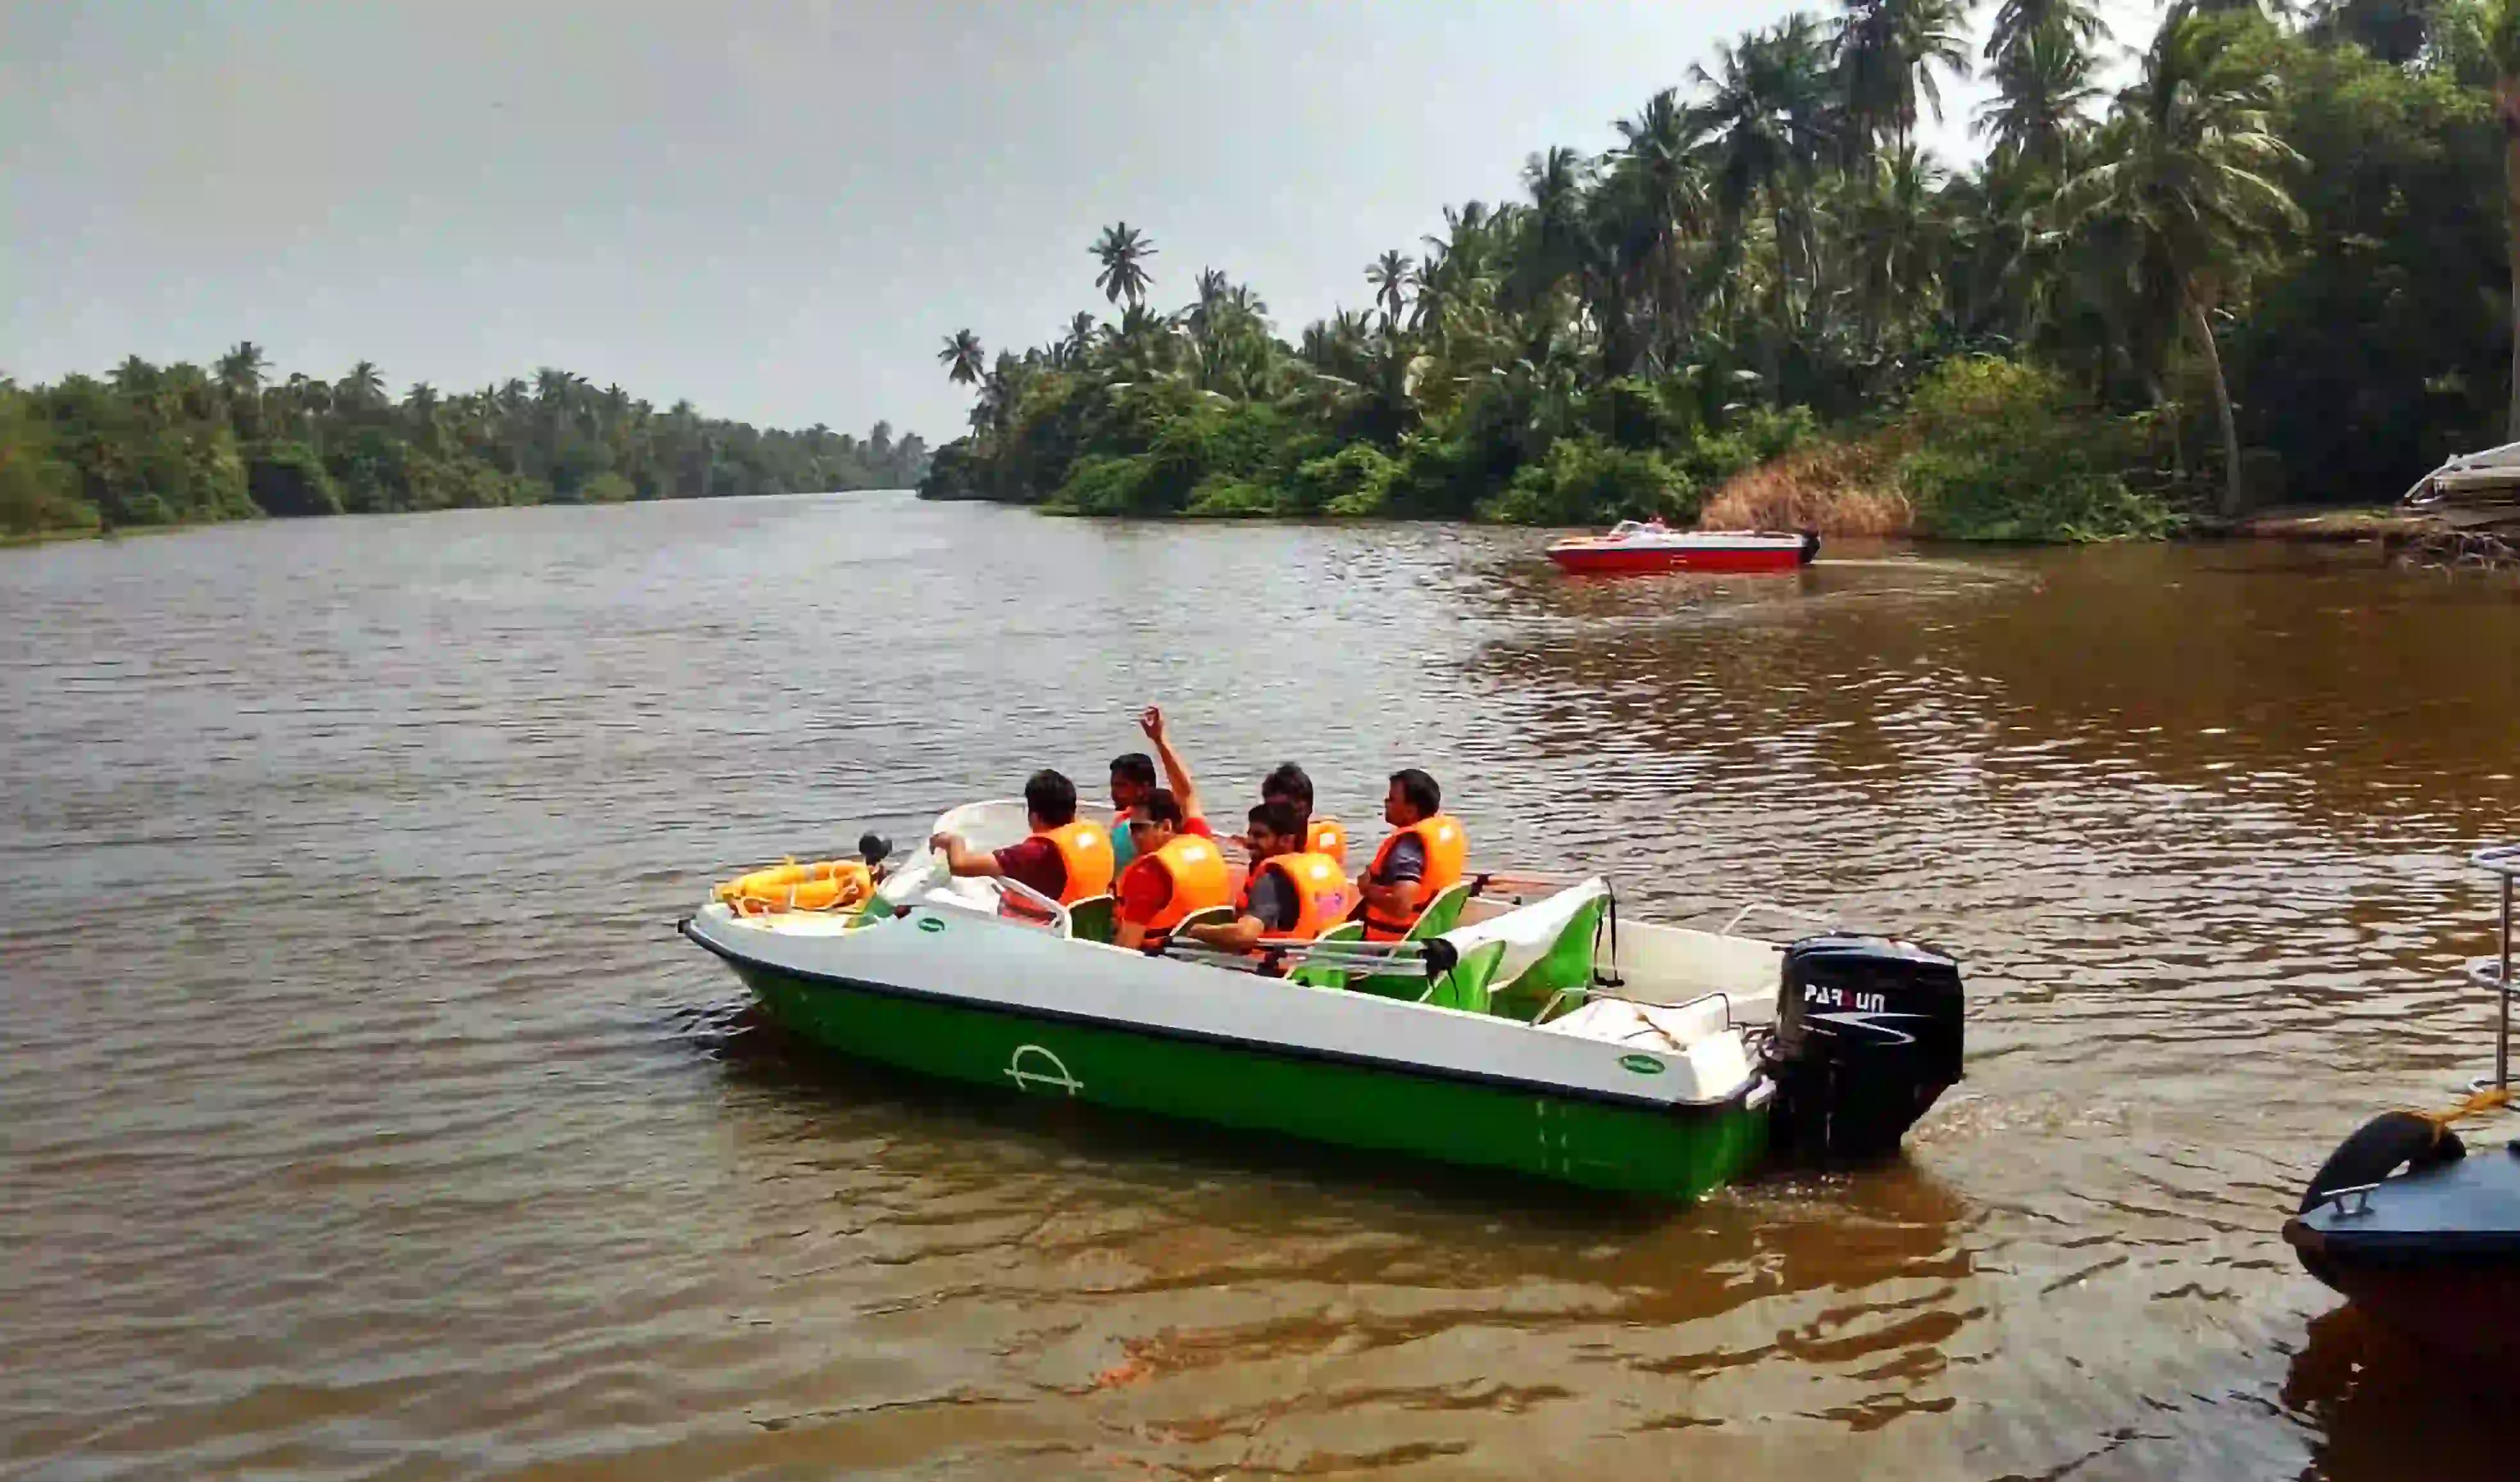 Speed Boat Ride in Pondicherry, Tamil Nadu